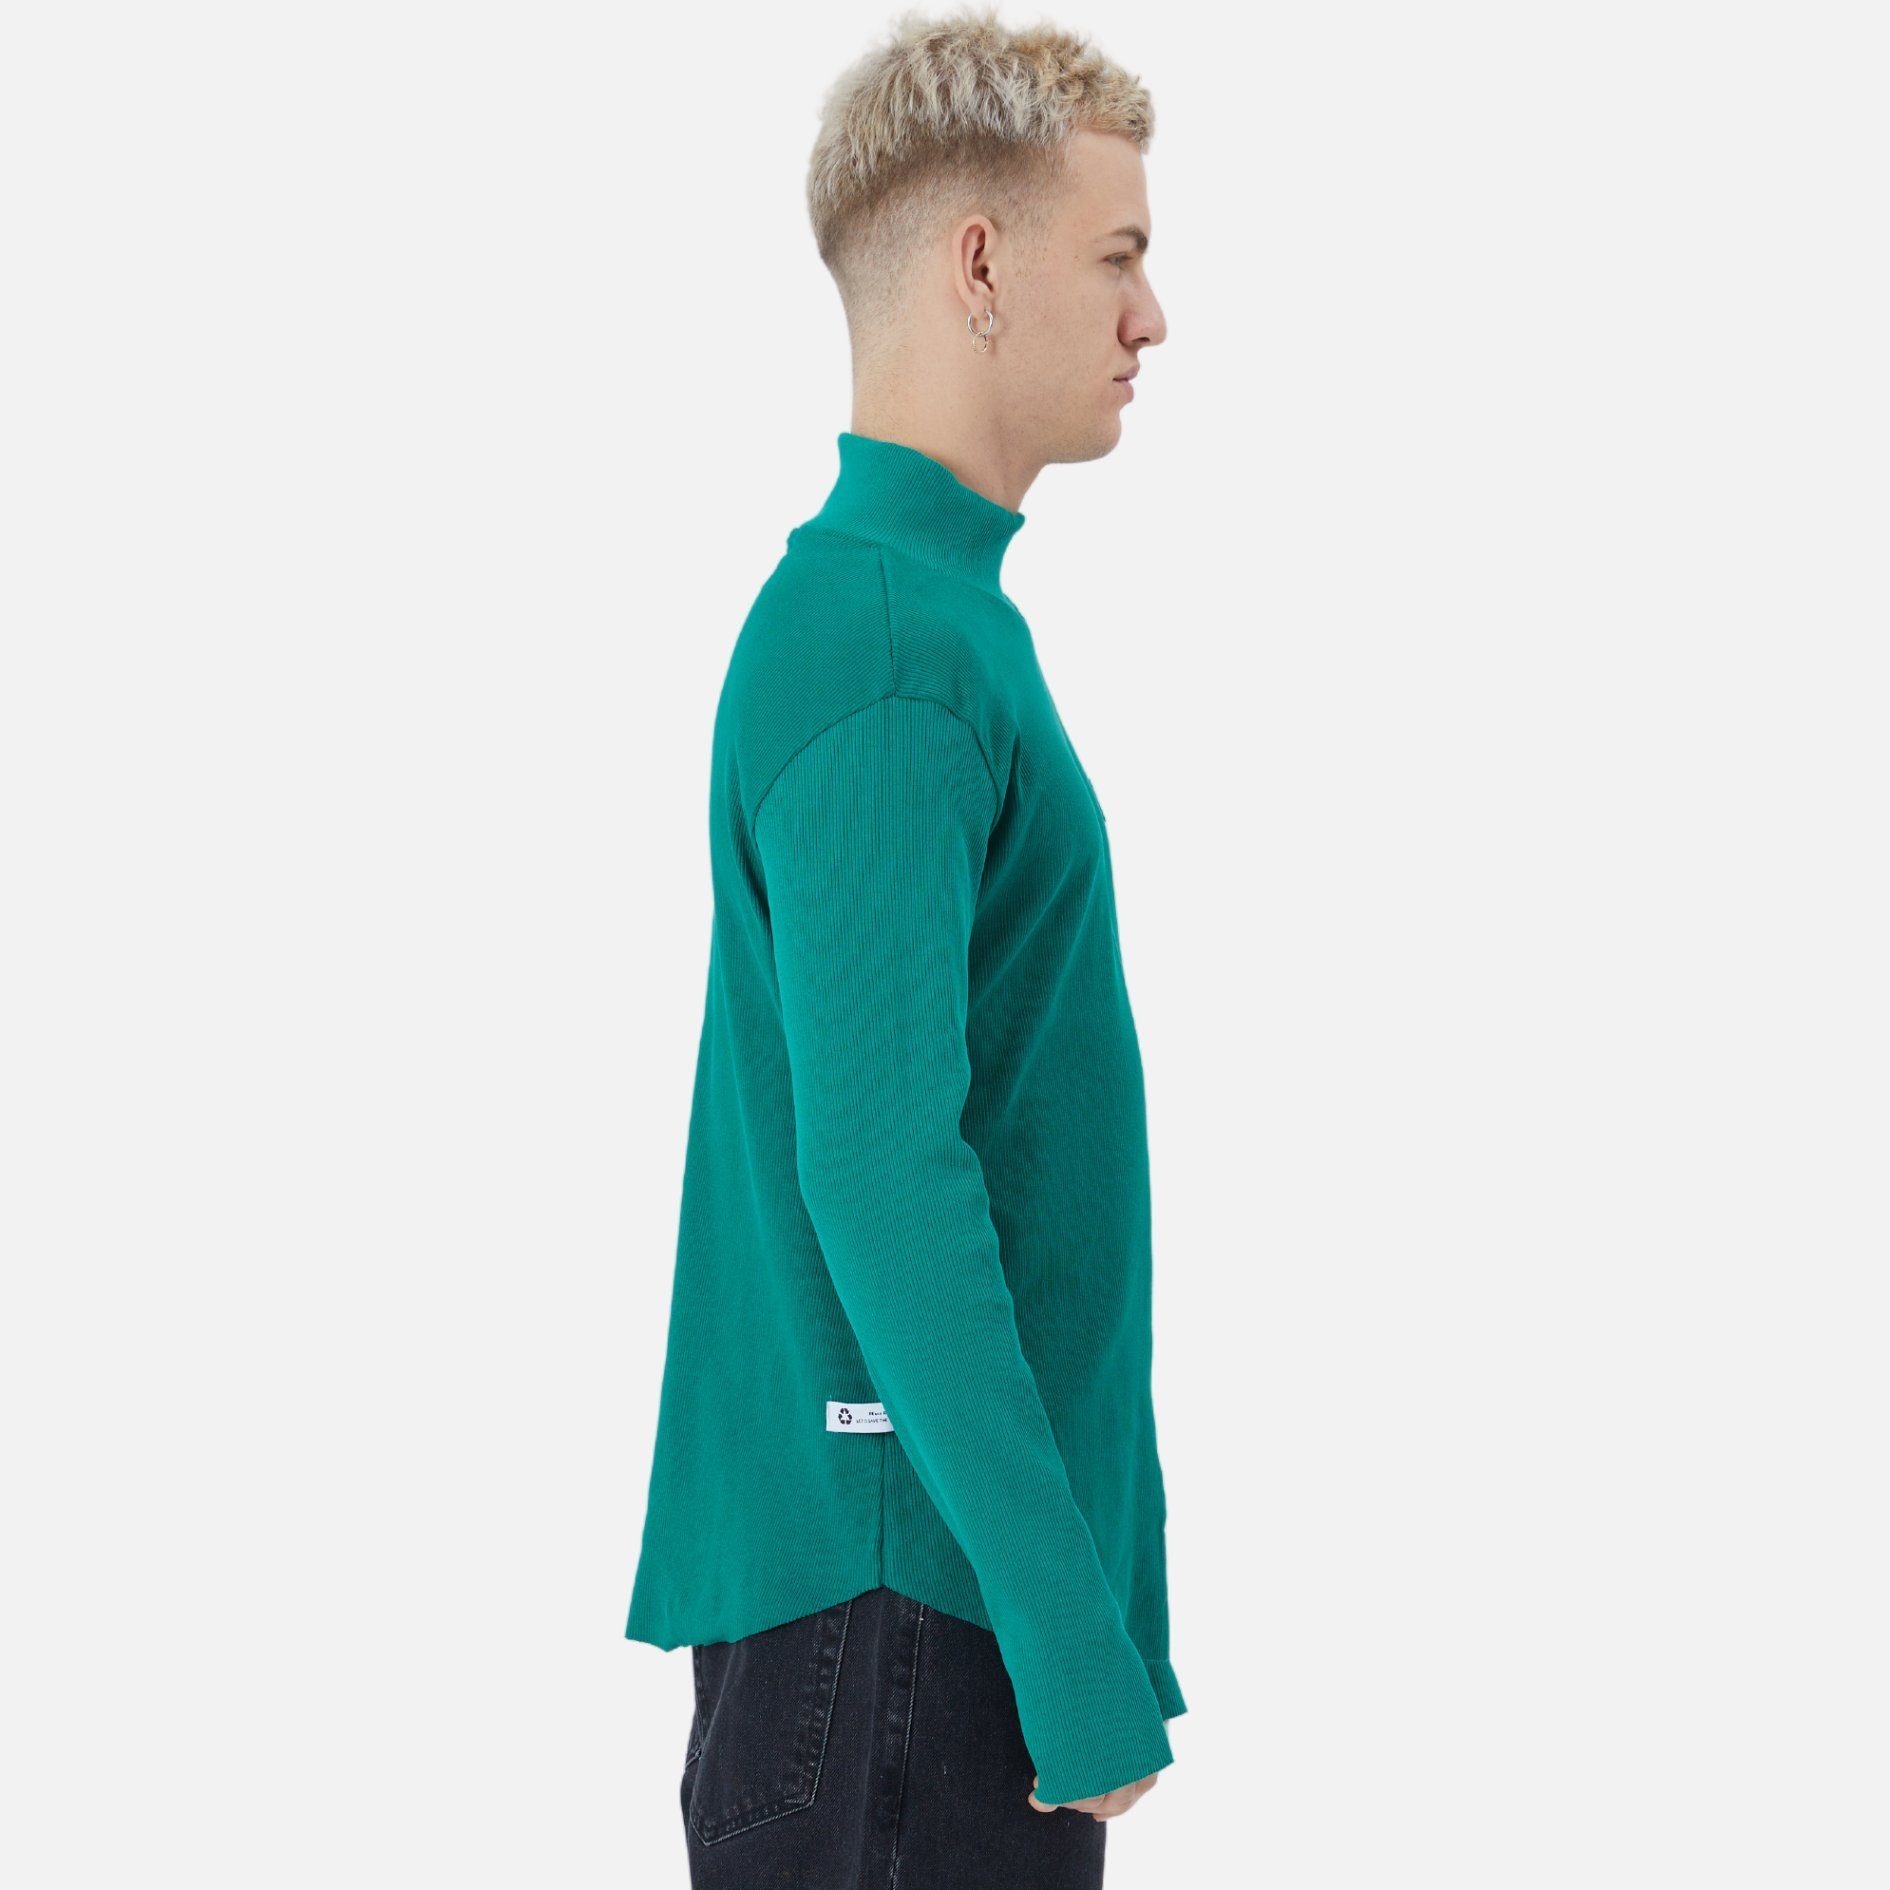 COFI Casuals Pullover Herren Fit Rundhals Sweatshirt Sweatshirt Grün Regular